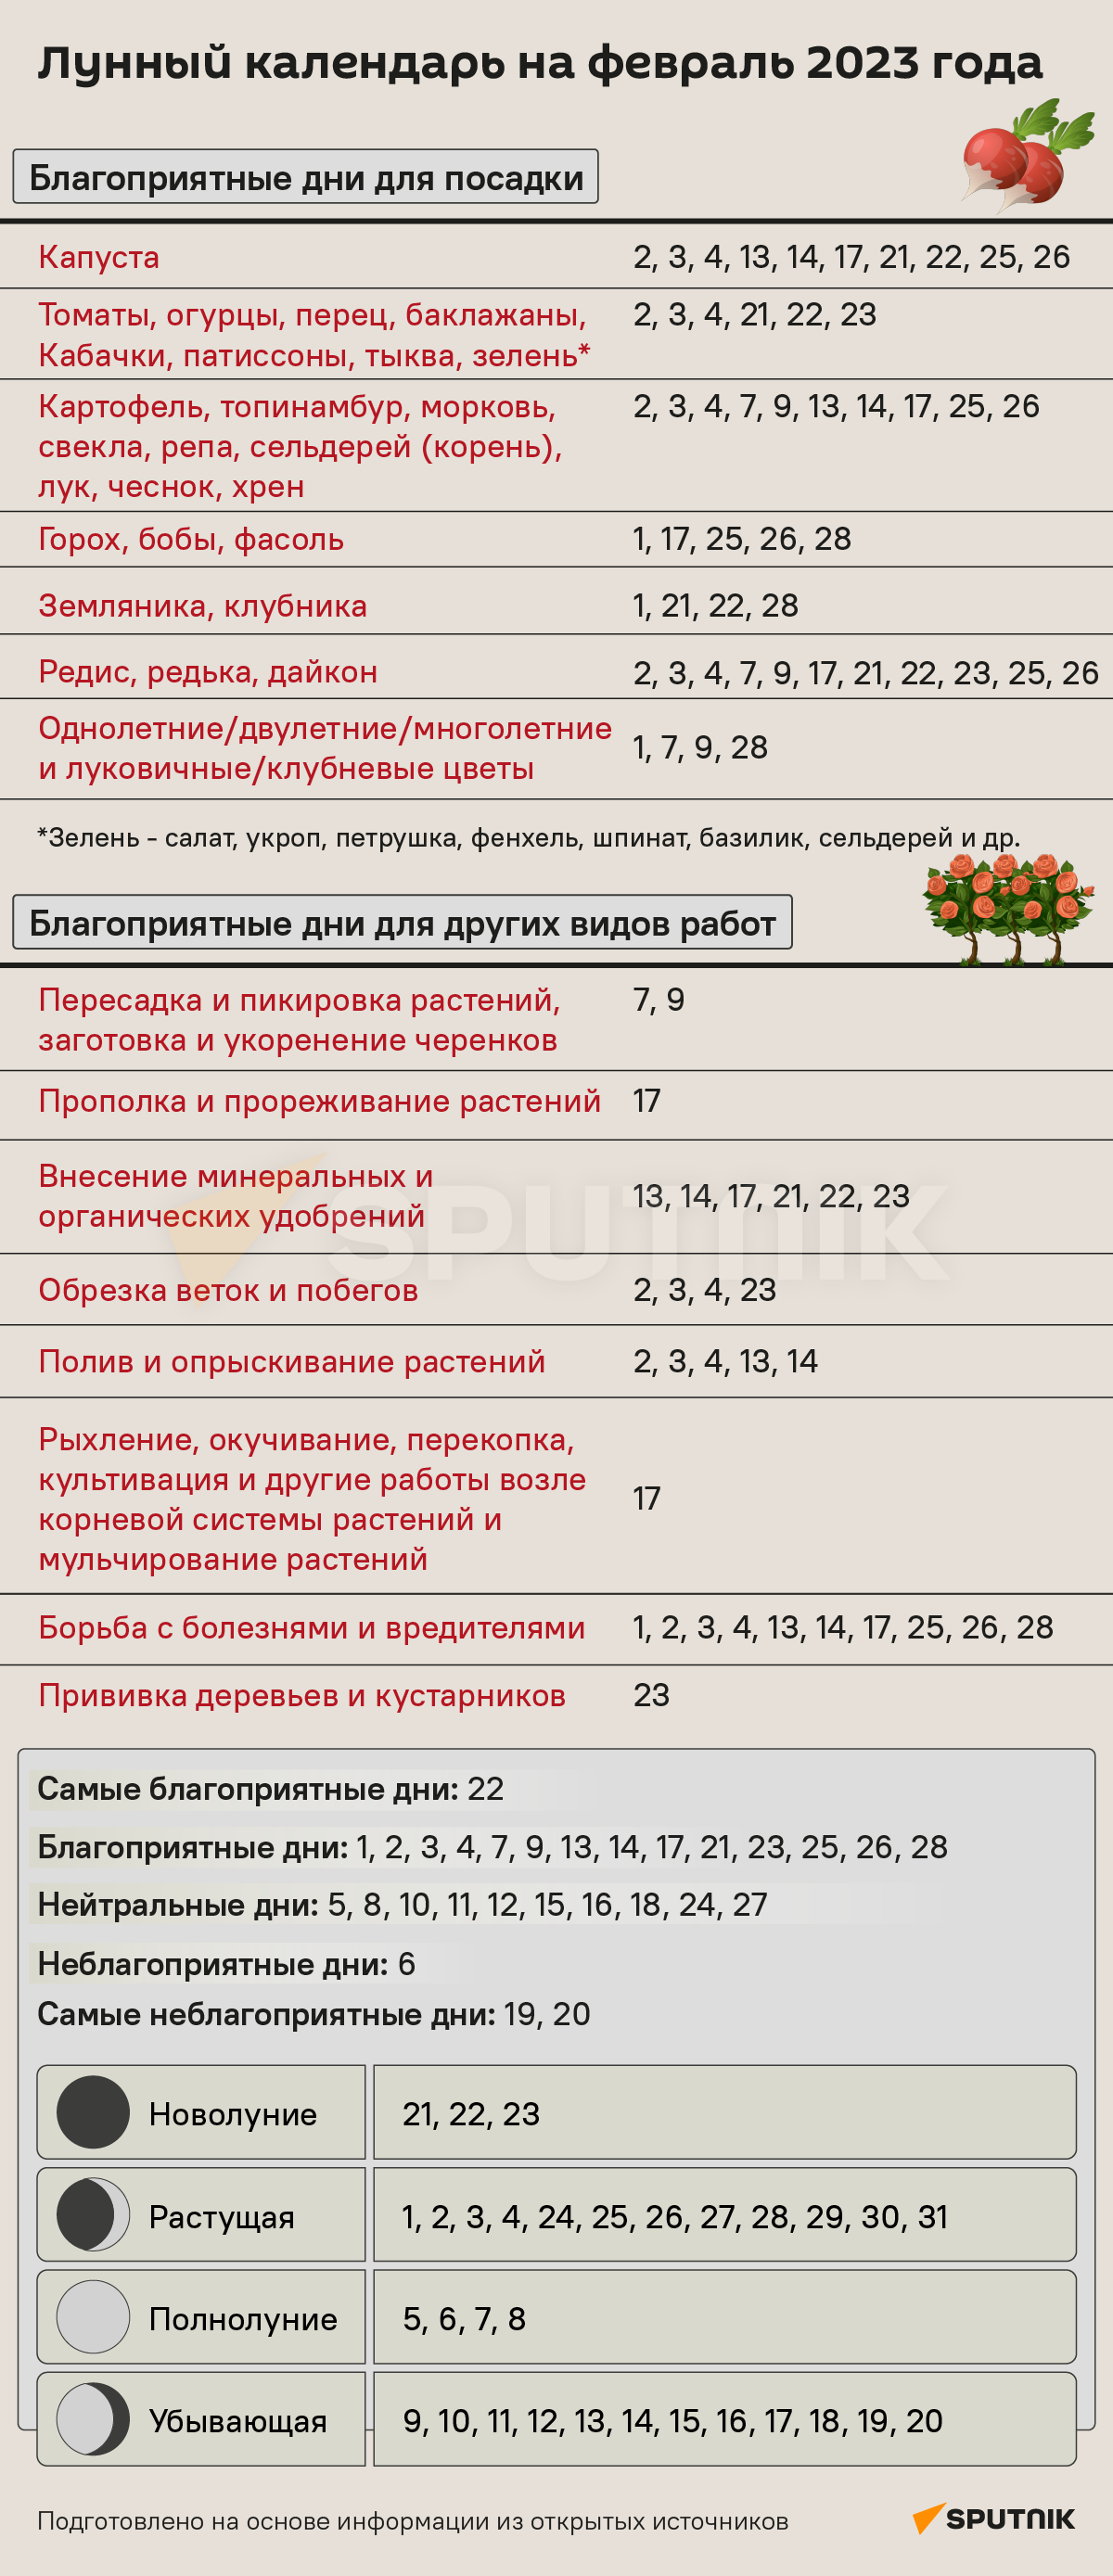 Лунный календарь садовода и огородника на февраль 2023 года - Sputnik Беларусь